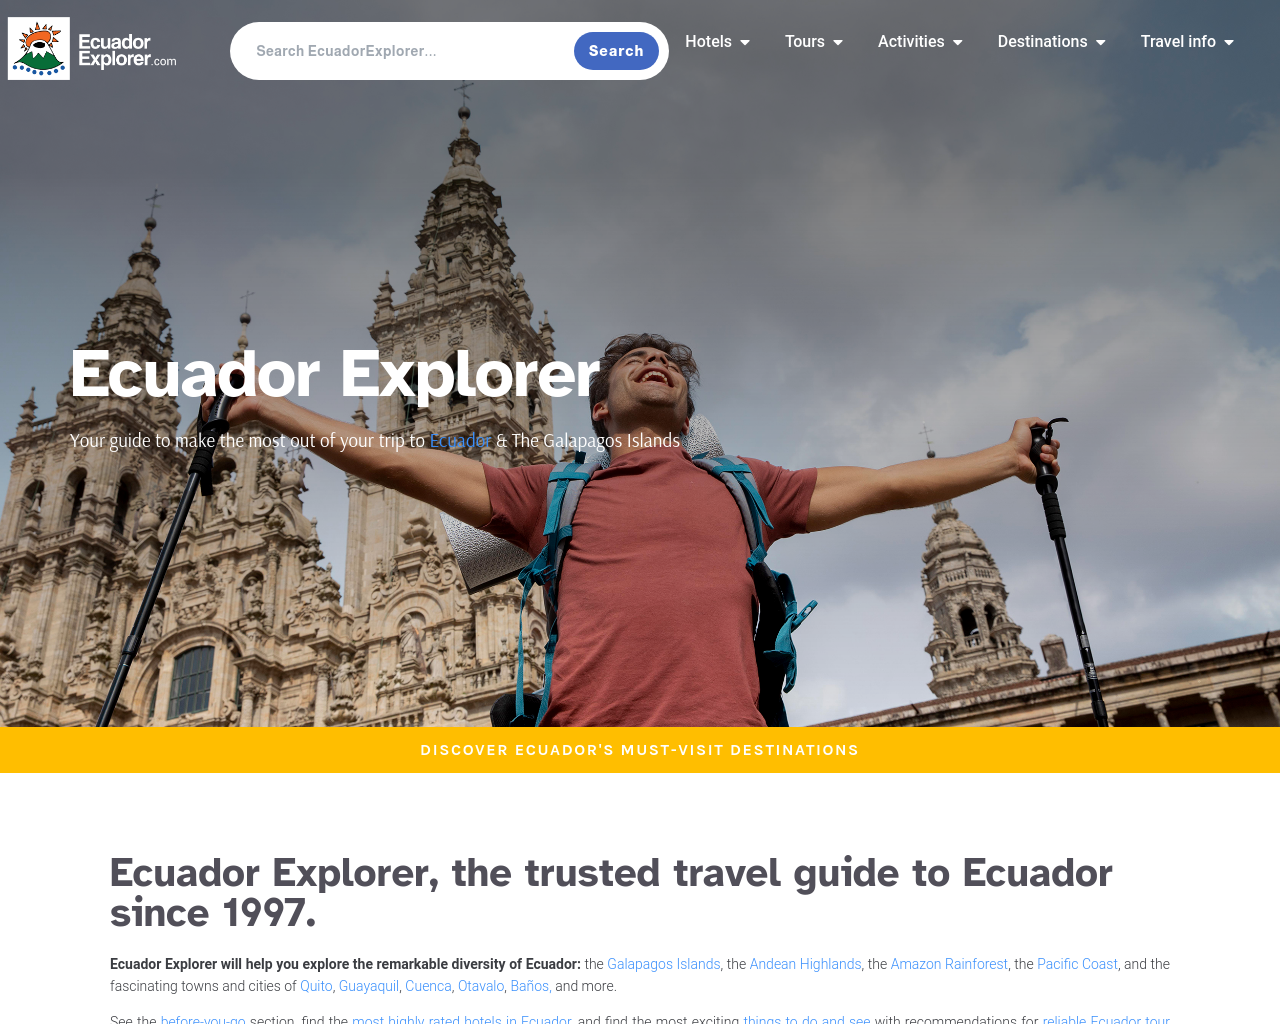 ecuadorexplorer.com